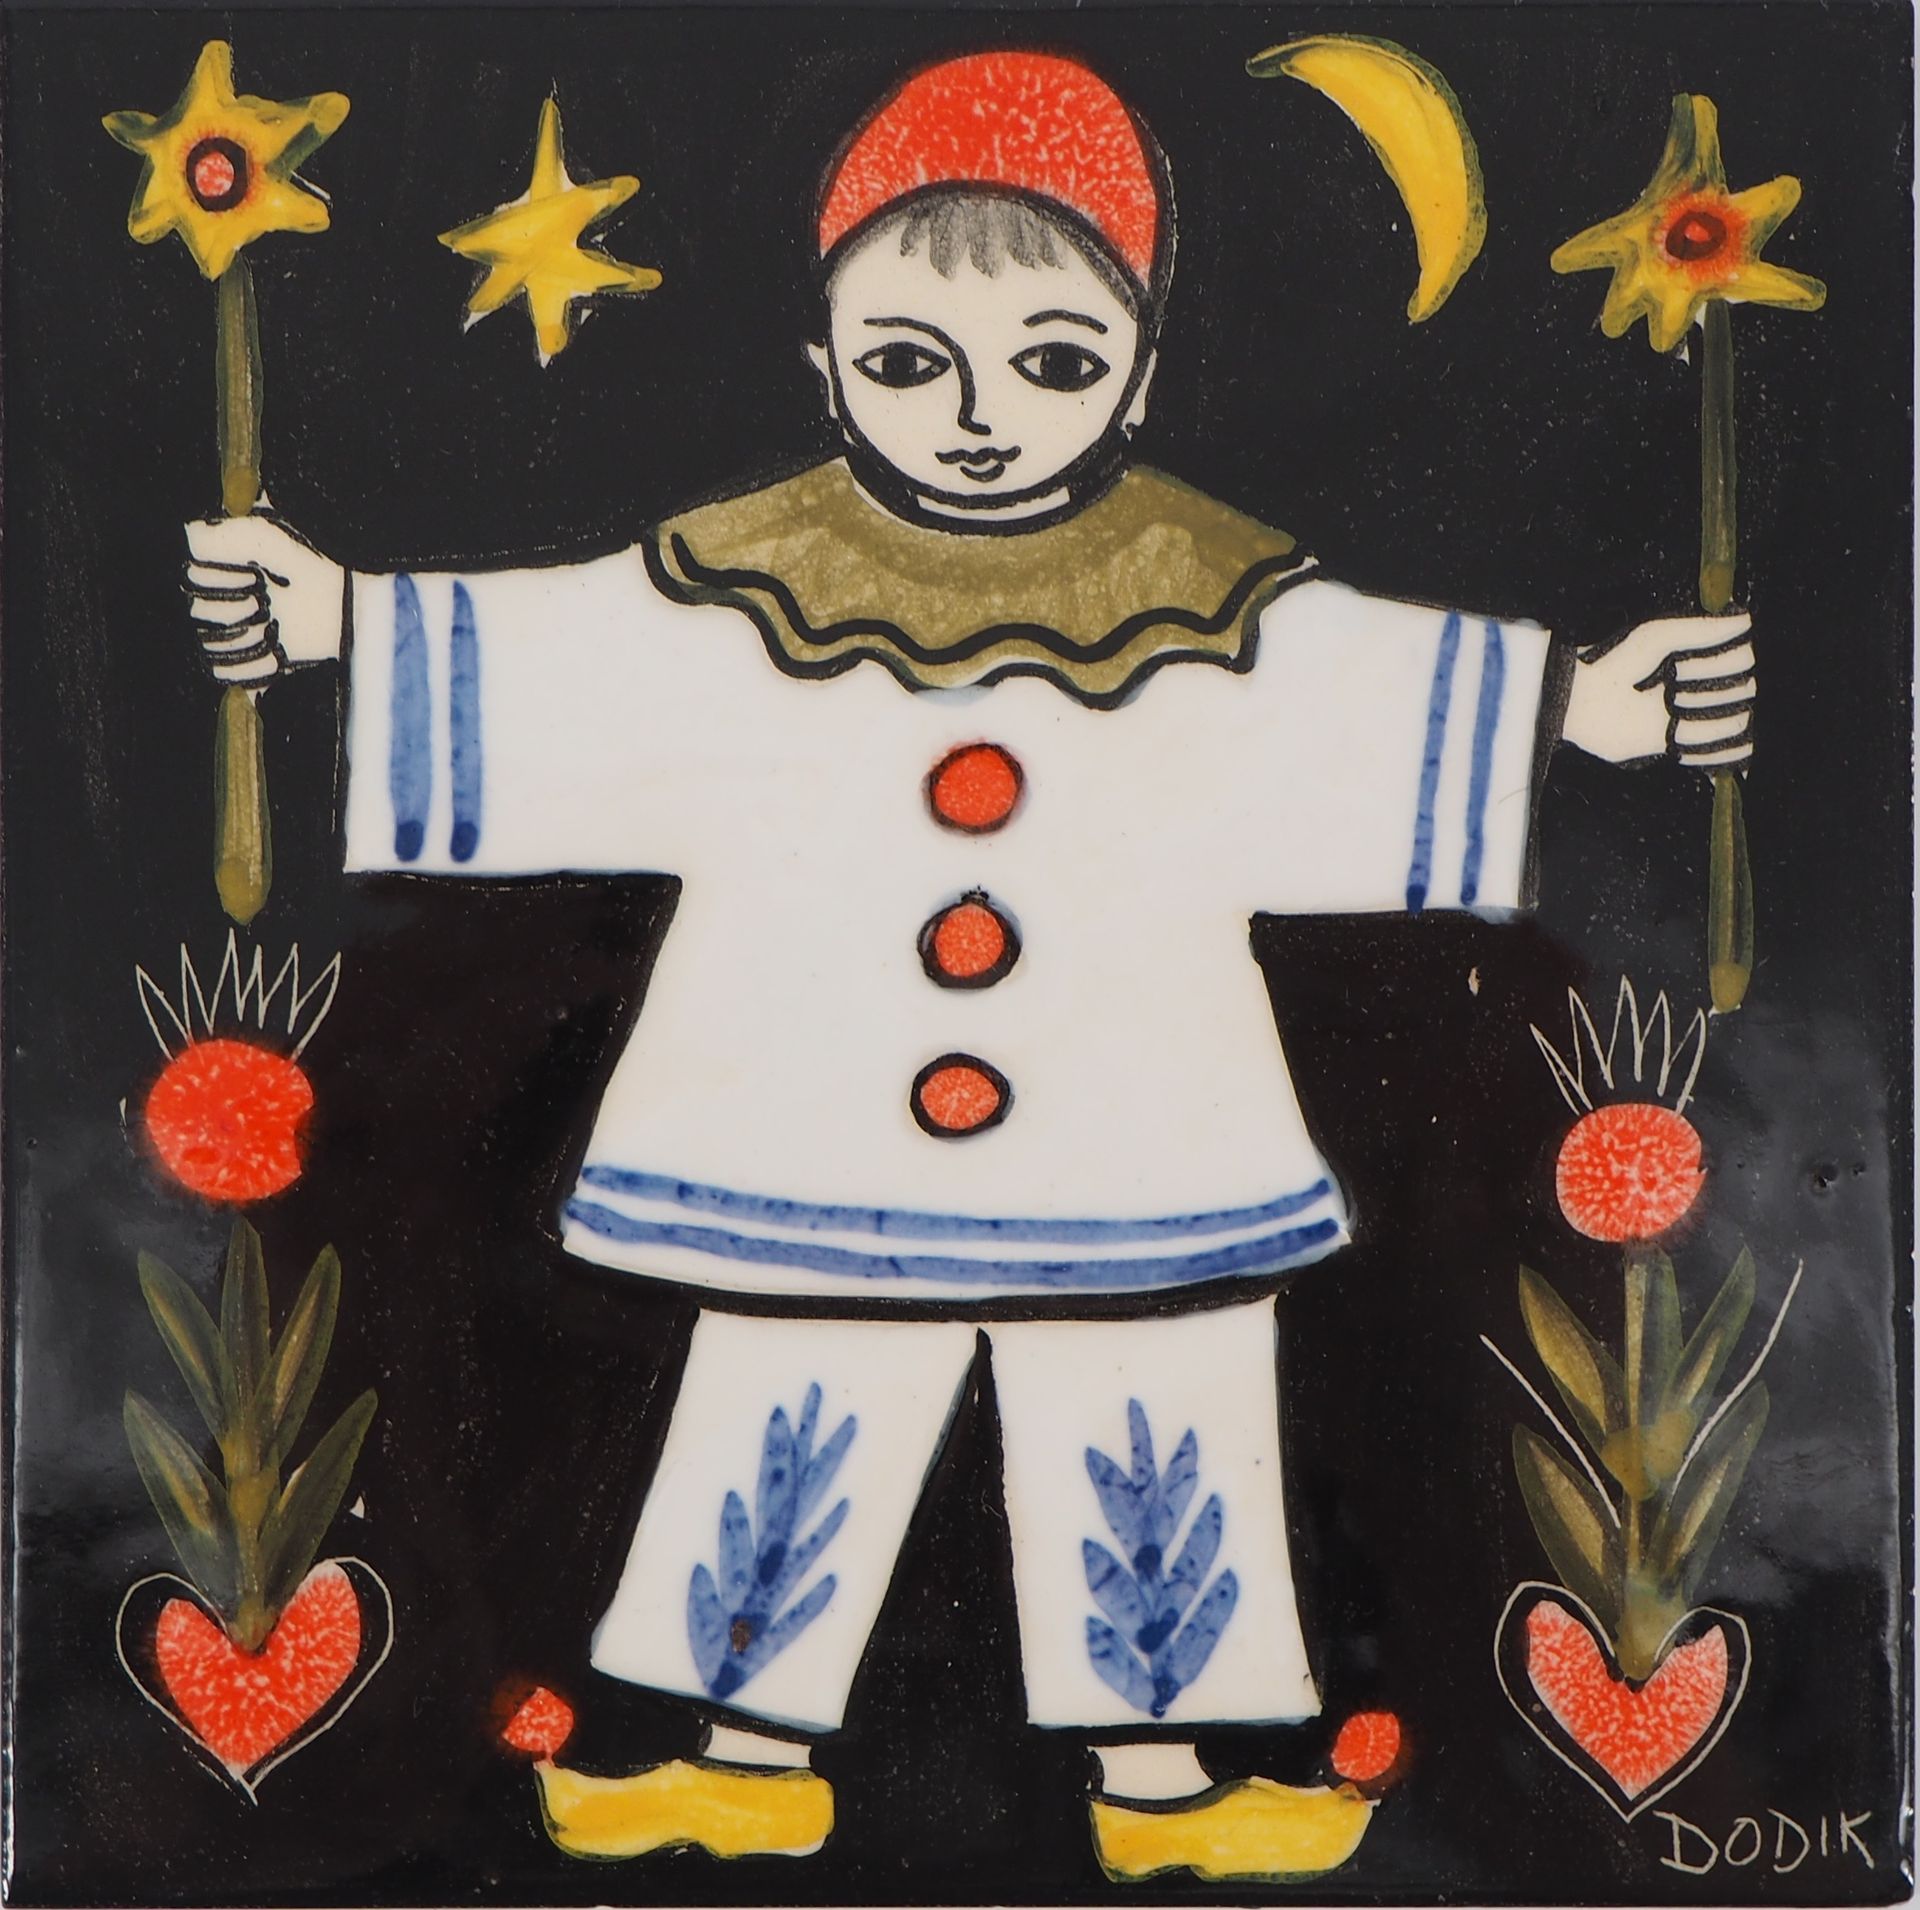 DODIK DODIK (Dodik Jégou, 1934-)

Pierrot la Luna

Cerámica original (Saint Malo&hellip;